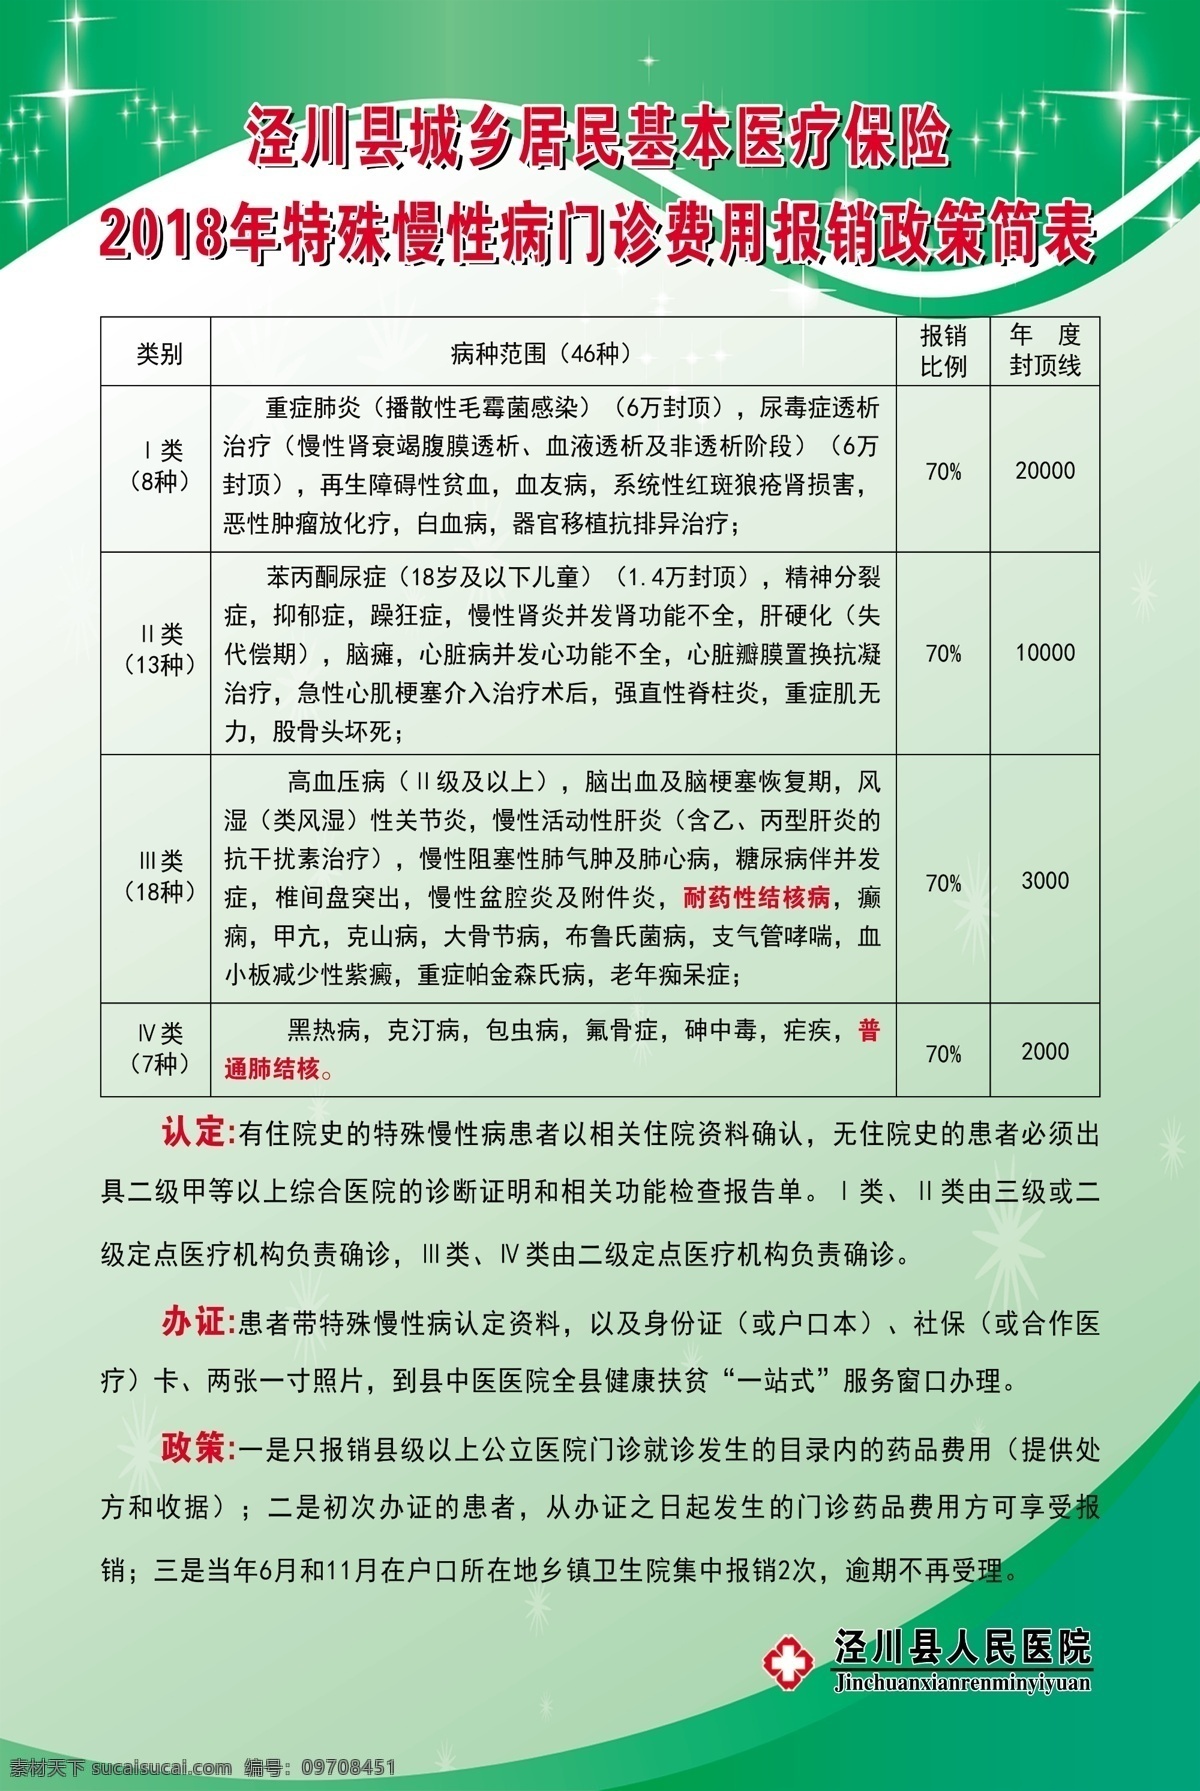 泾川县 城乡 居民 基本 医疗保险 农村医疗保险 医疗保险报销 报销制度 报销标准 基本医疗标准